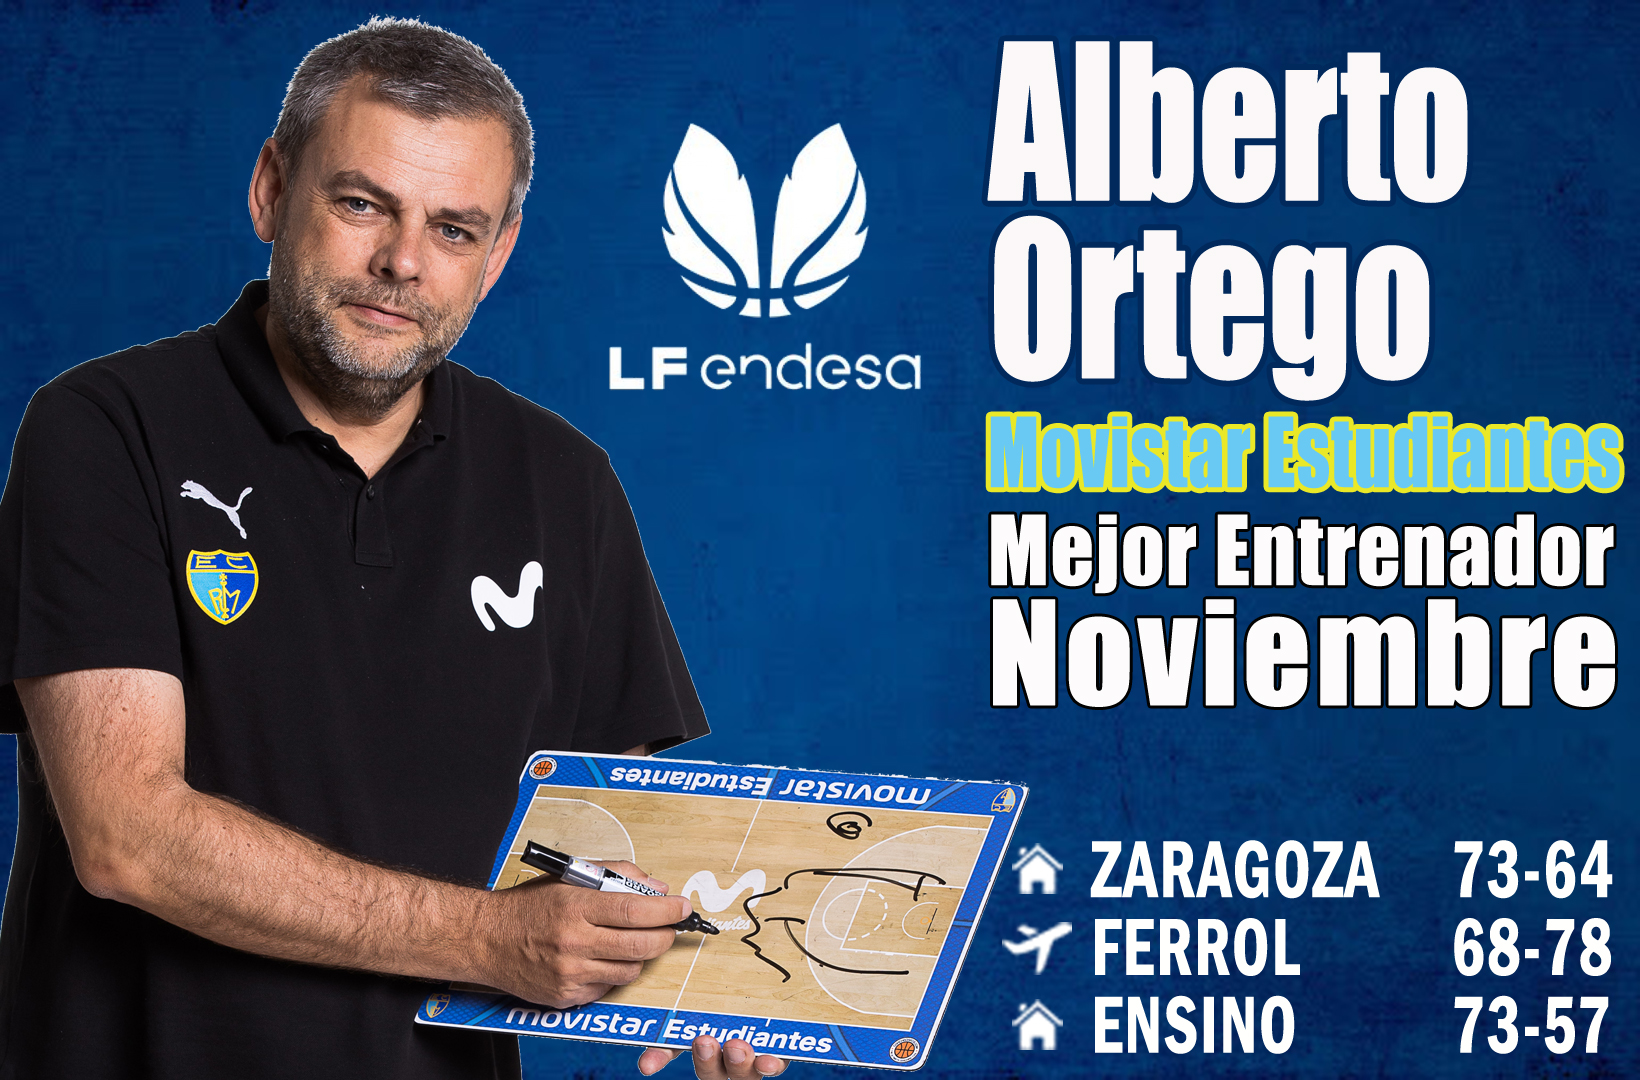 Alberto Ortego, Mejor Entrenador de noviembre LFEndesa para la AEEB